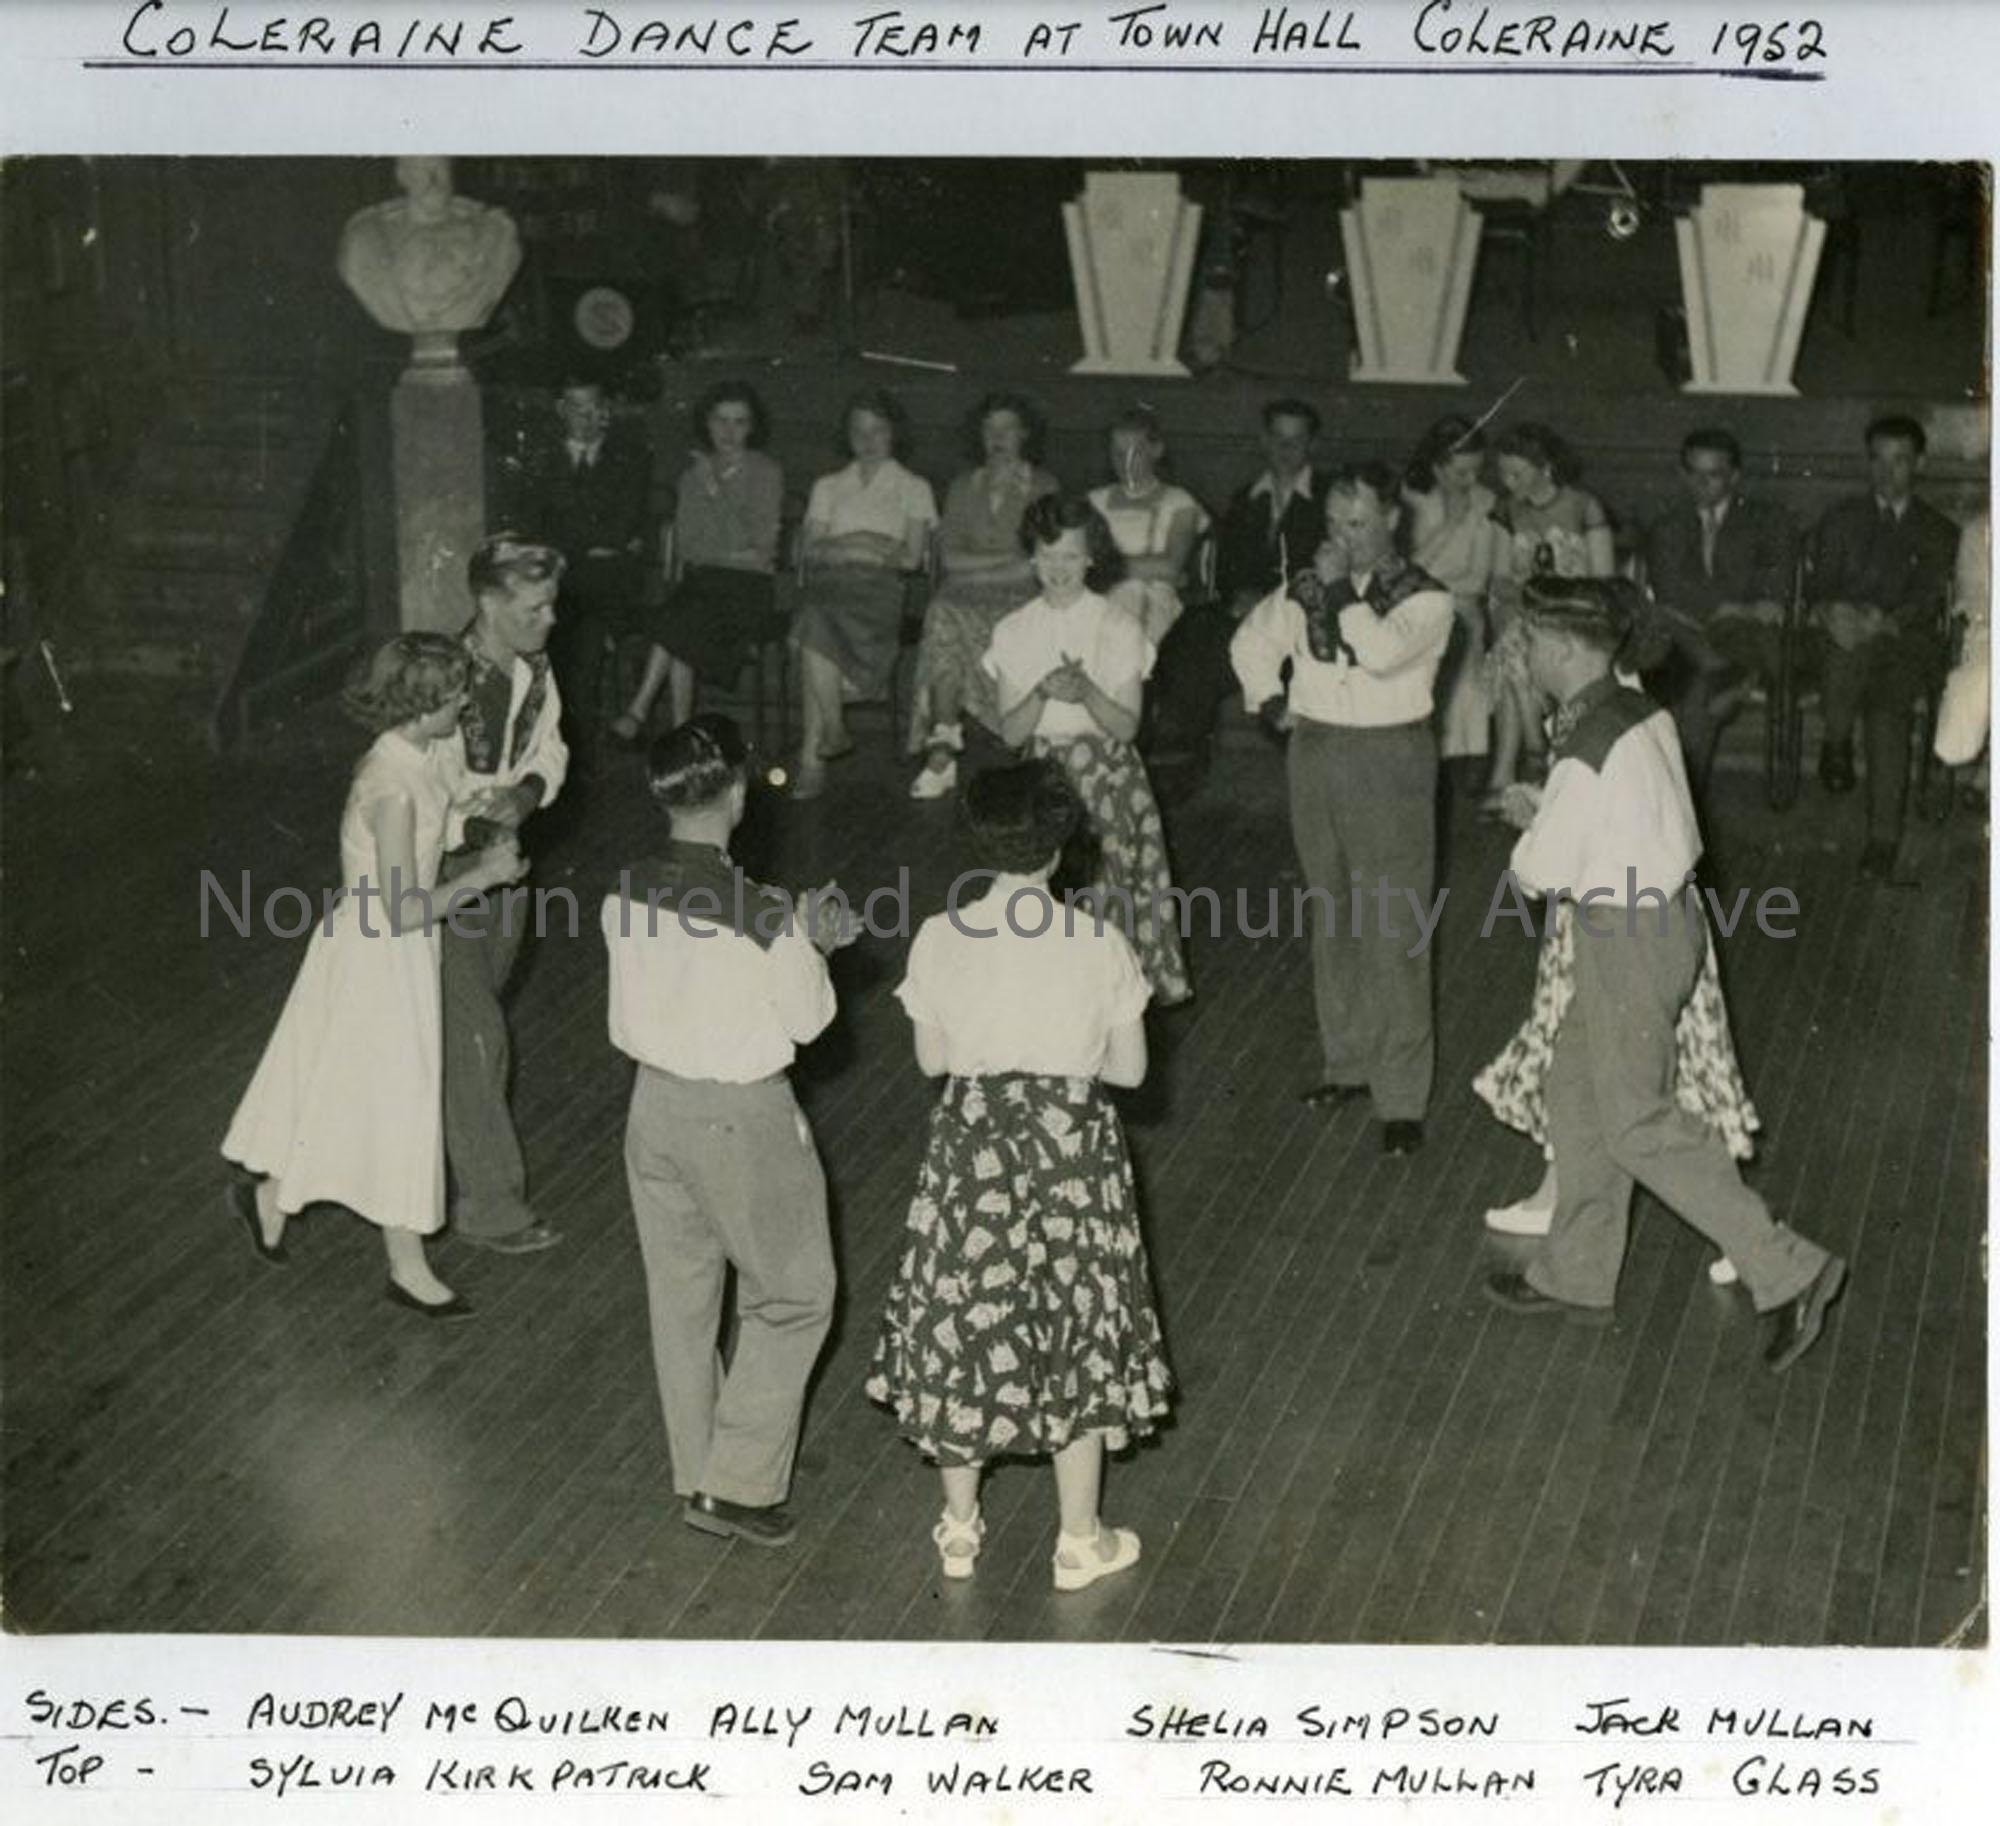 Coleraine Dance Team at Town Hall Coleraine 1952